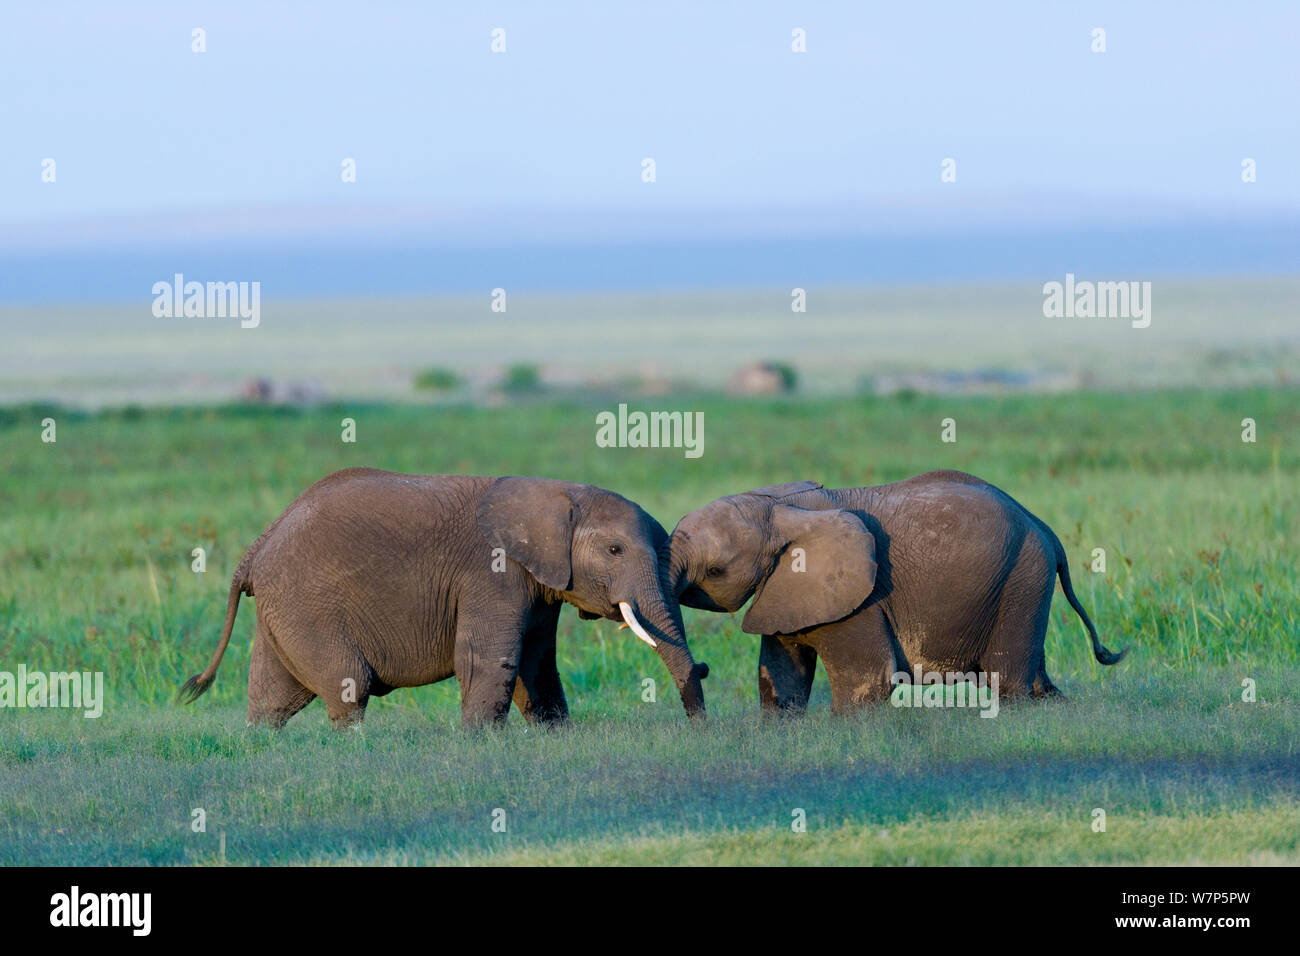 L'éléphant africain (Loxodonta africana) les mineurs de jouer. Le Parc national Amboseli, au Kenya. Banque D'Images